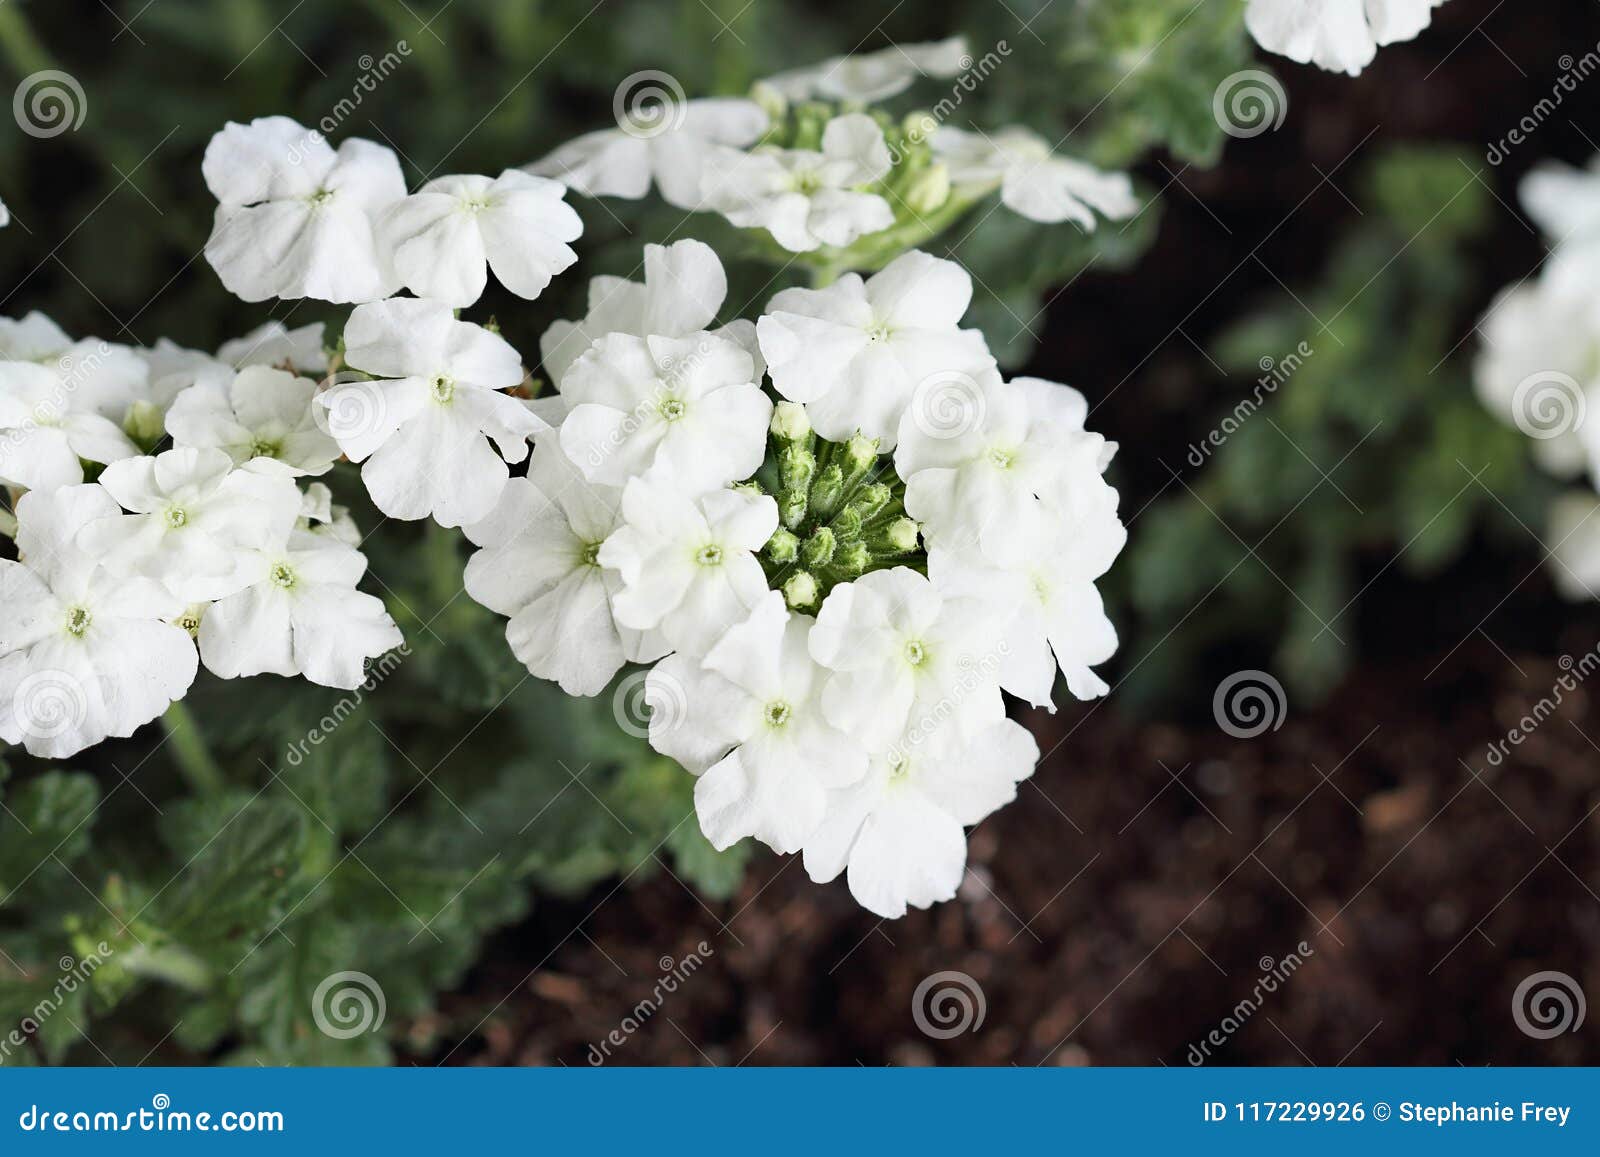 Verveine blanche de jardin photo stock. Image du floral - 117229926